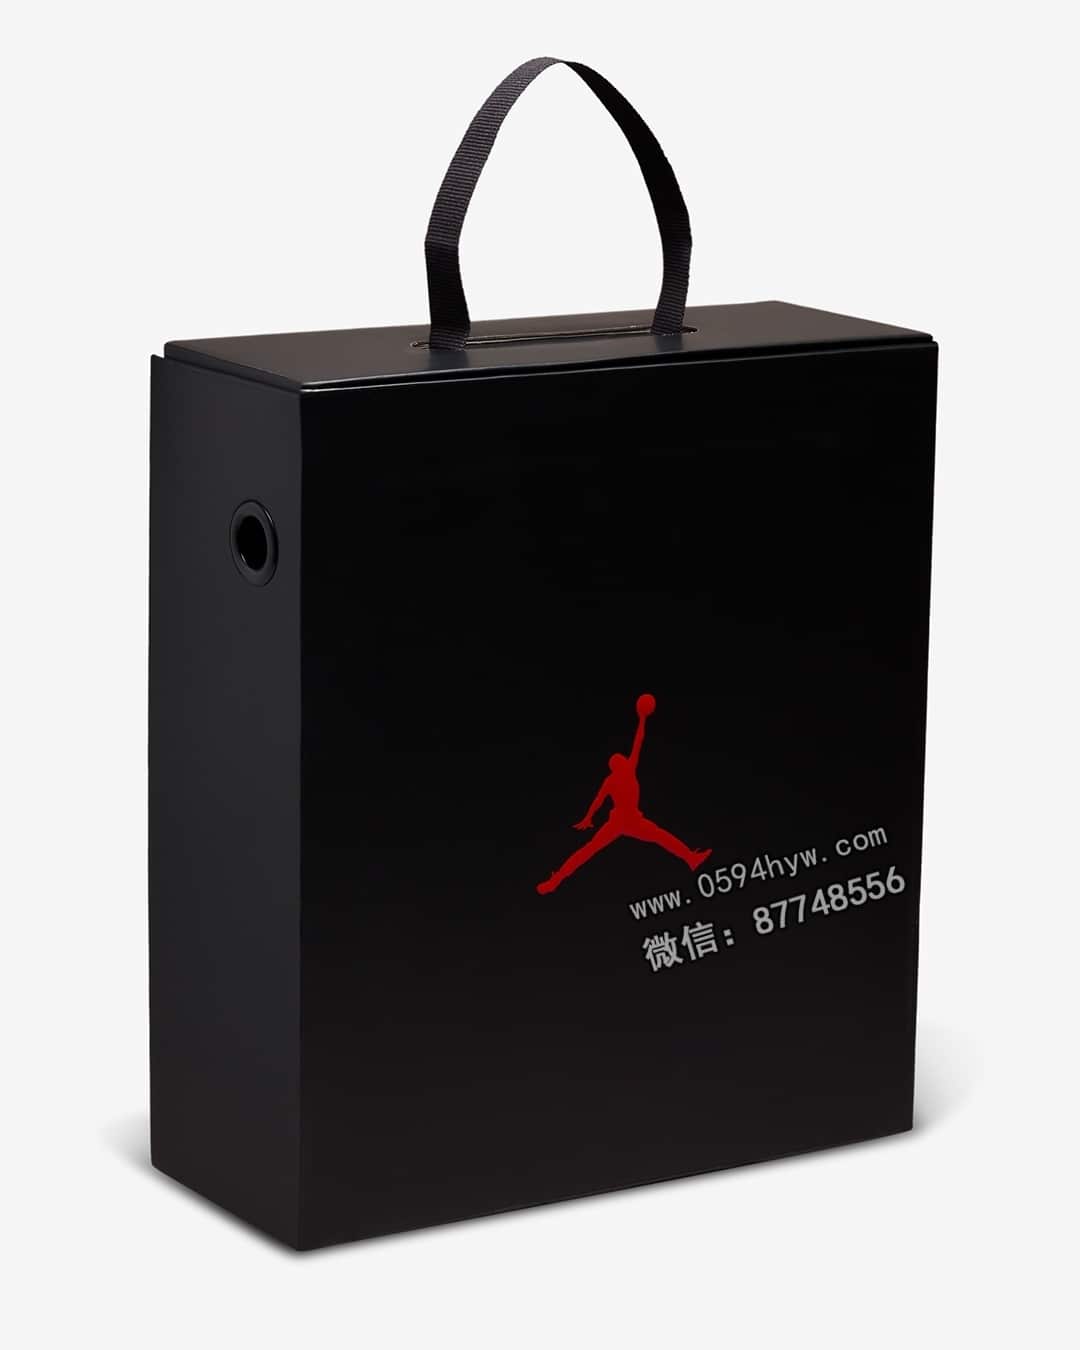 高帮, 新鞋, Brooklyn, Black, Aj1, AJ, Air Jordan 1 - 全新AJ1系列惊艳亮相！别无前例的全新鞋款首次曝光！